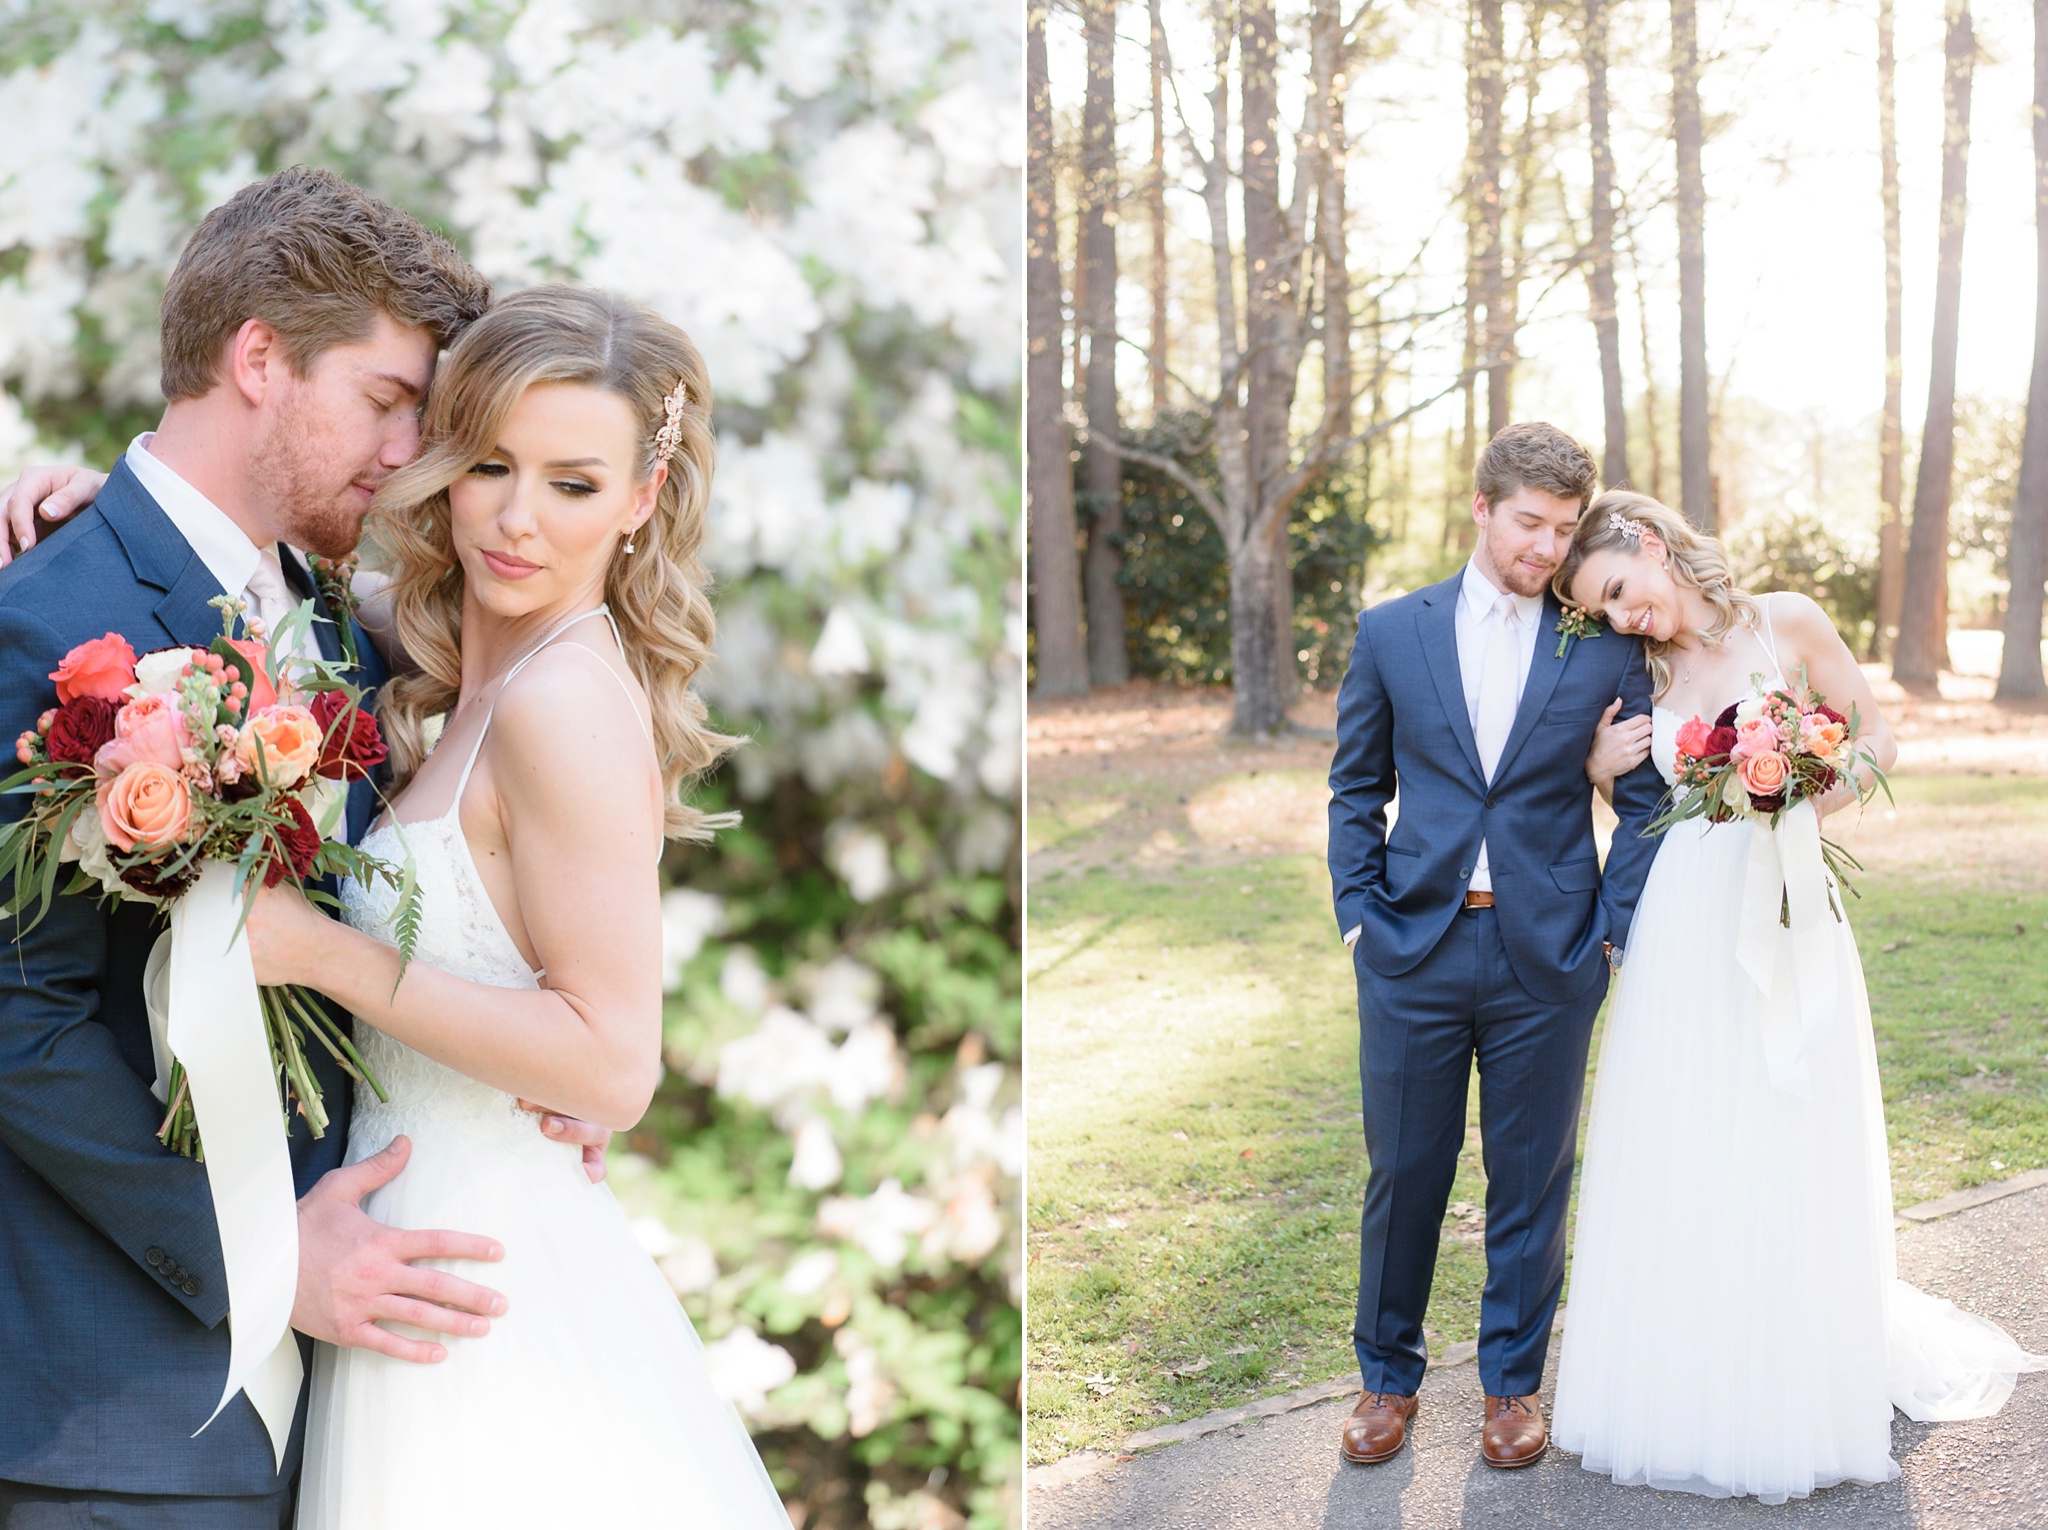 Aldridge Gardens Spring Wedding | Birmingham Alabama Wedding Photographers_0064.jpg